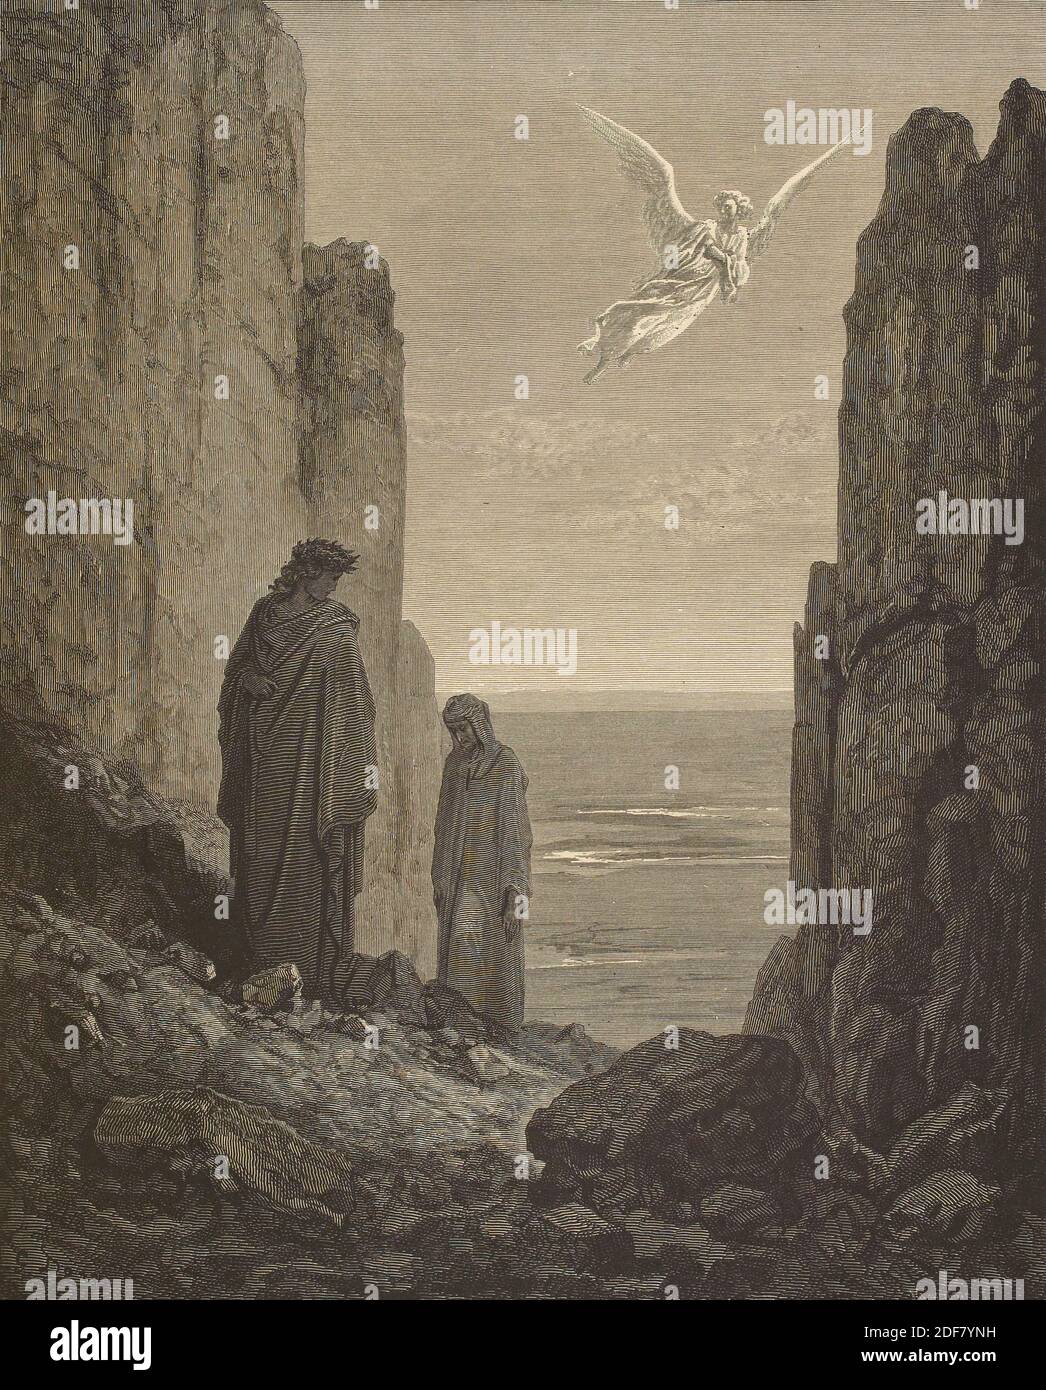 Dante - Divina Commedia - Purgatorio - Ilustración de Gustave Dorè - canto XIX - el ángel de la preocupación Foto de stock